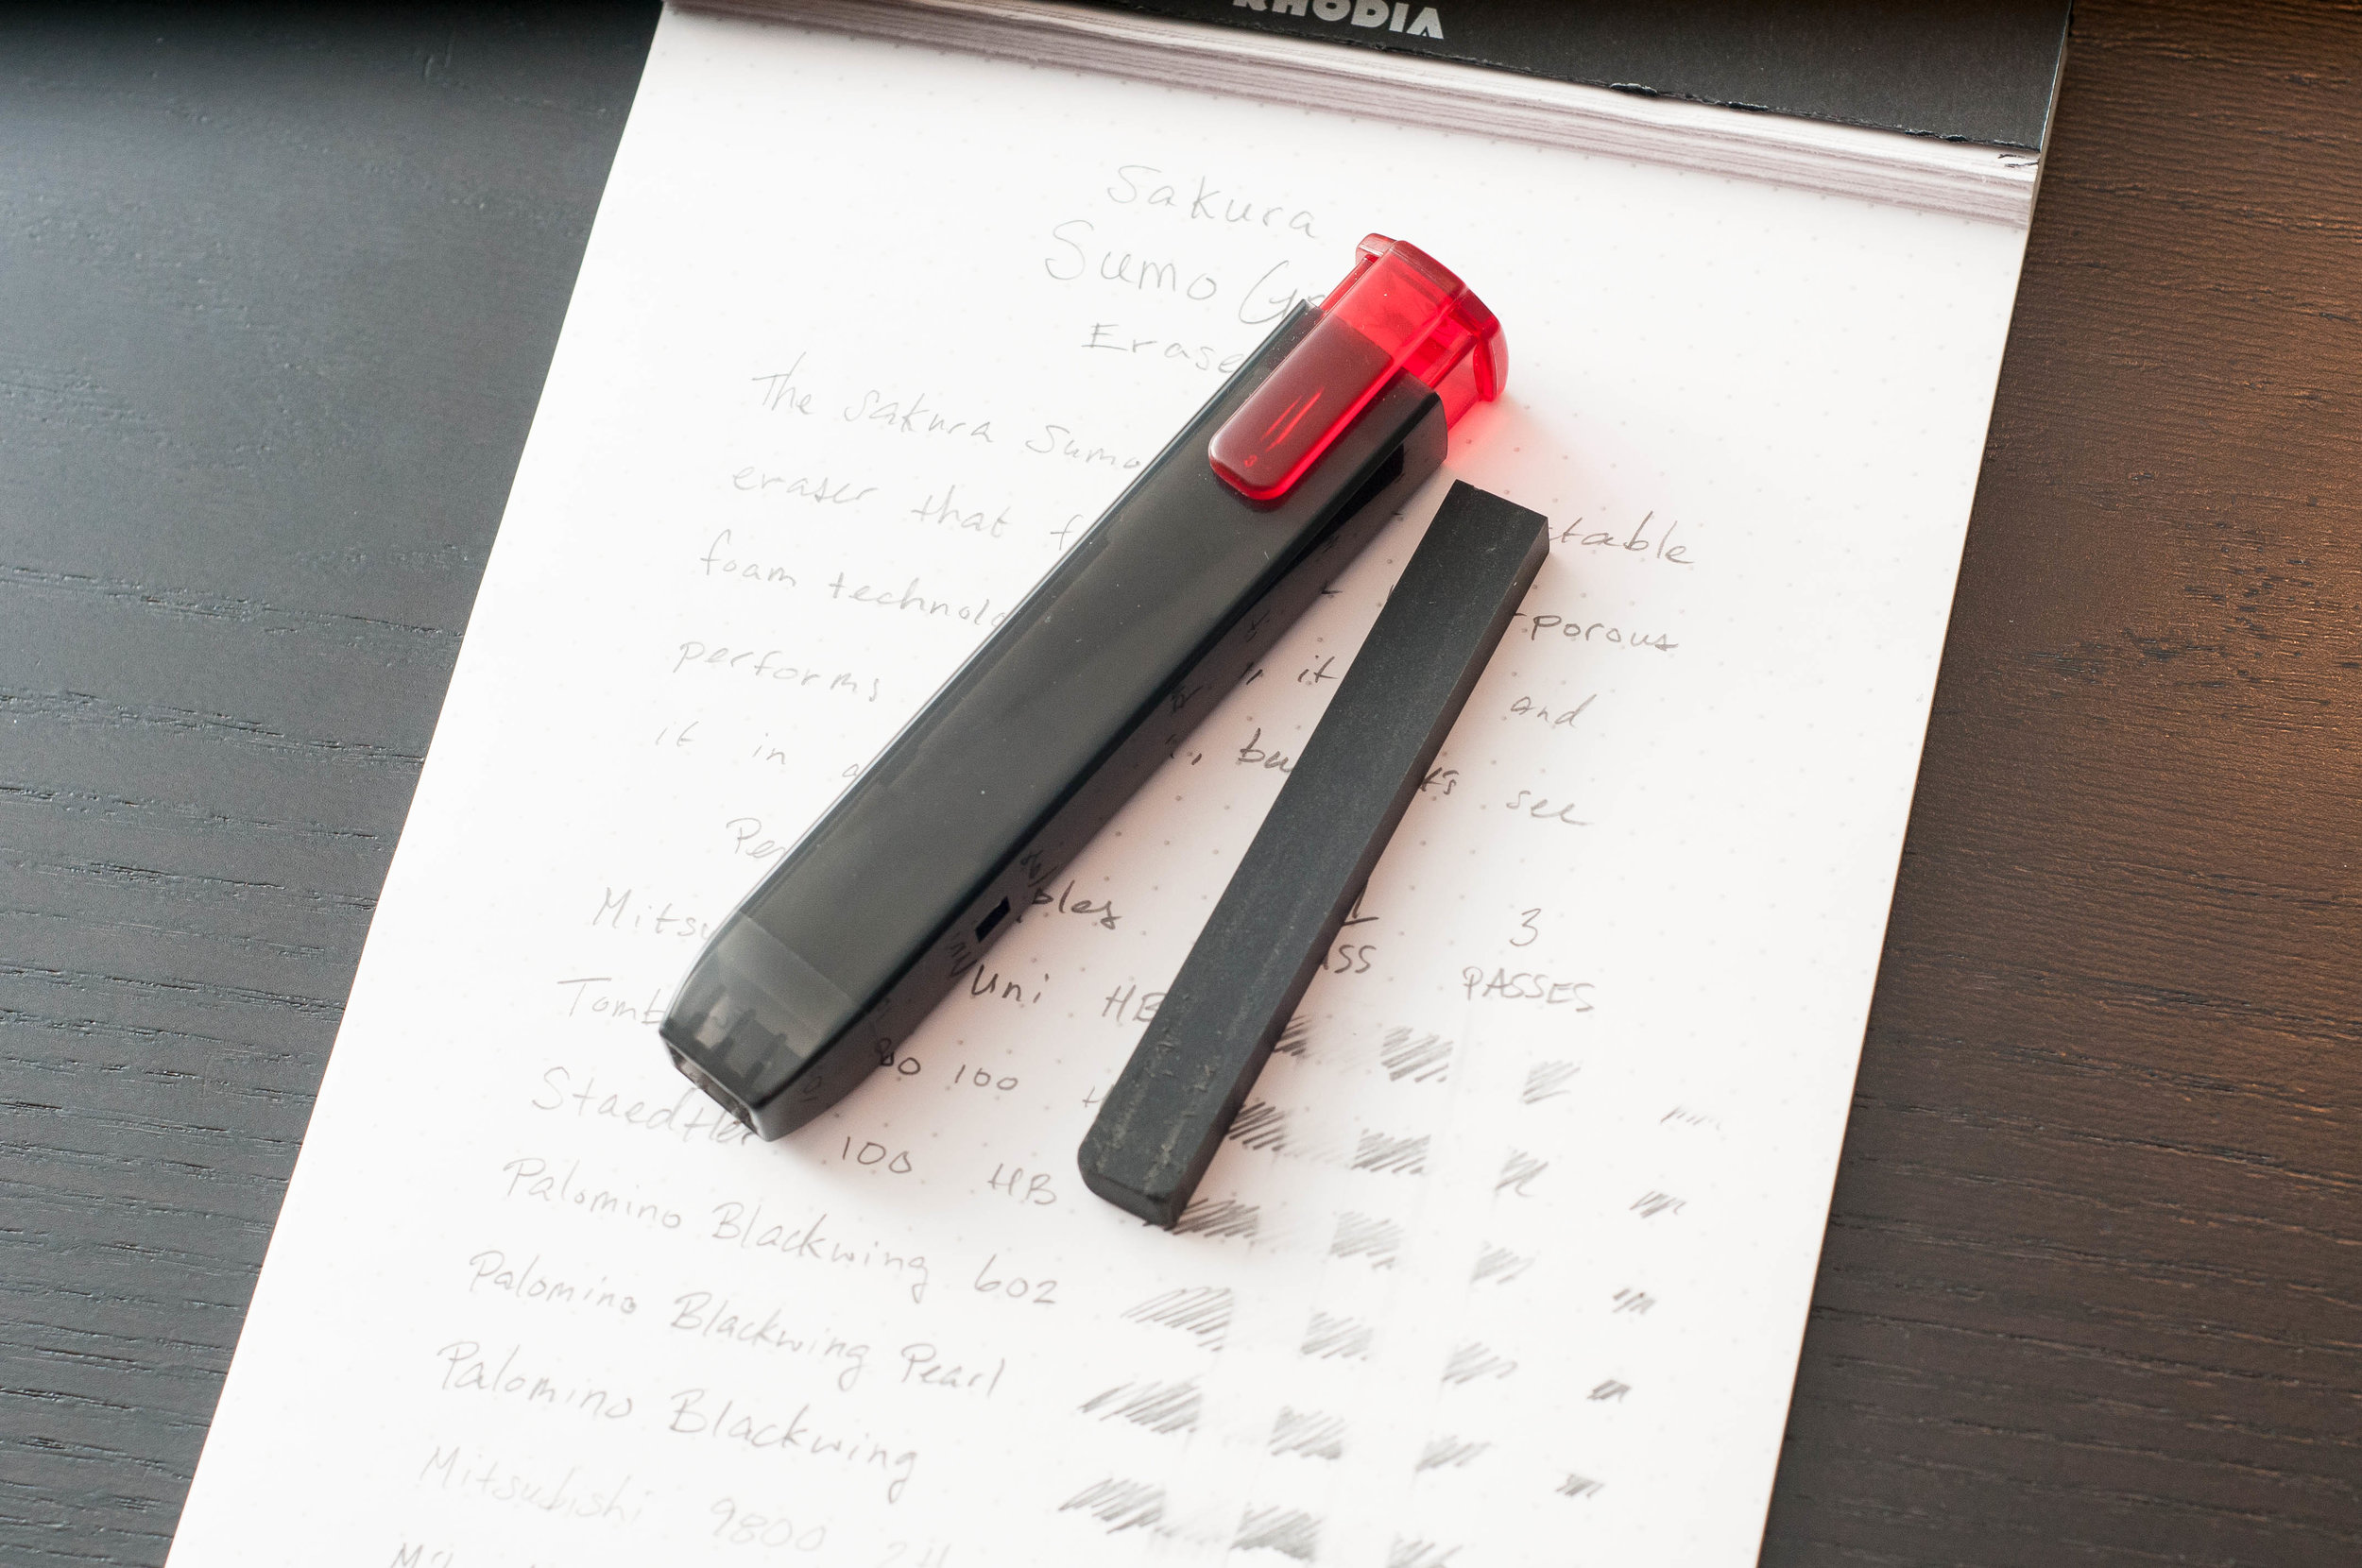 Sakura Sumo Grip Retractable Eraser Review — The Pen Addict